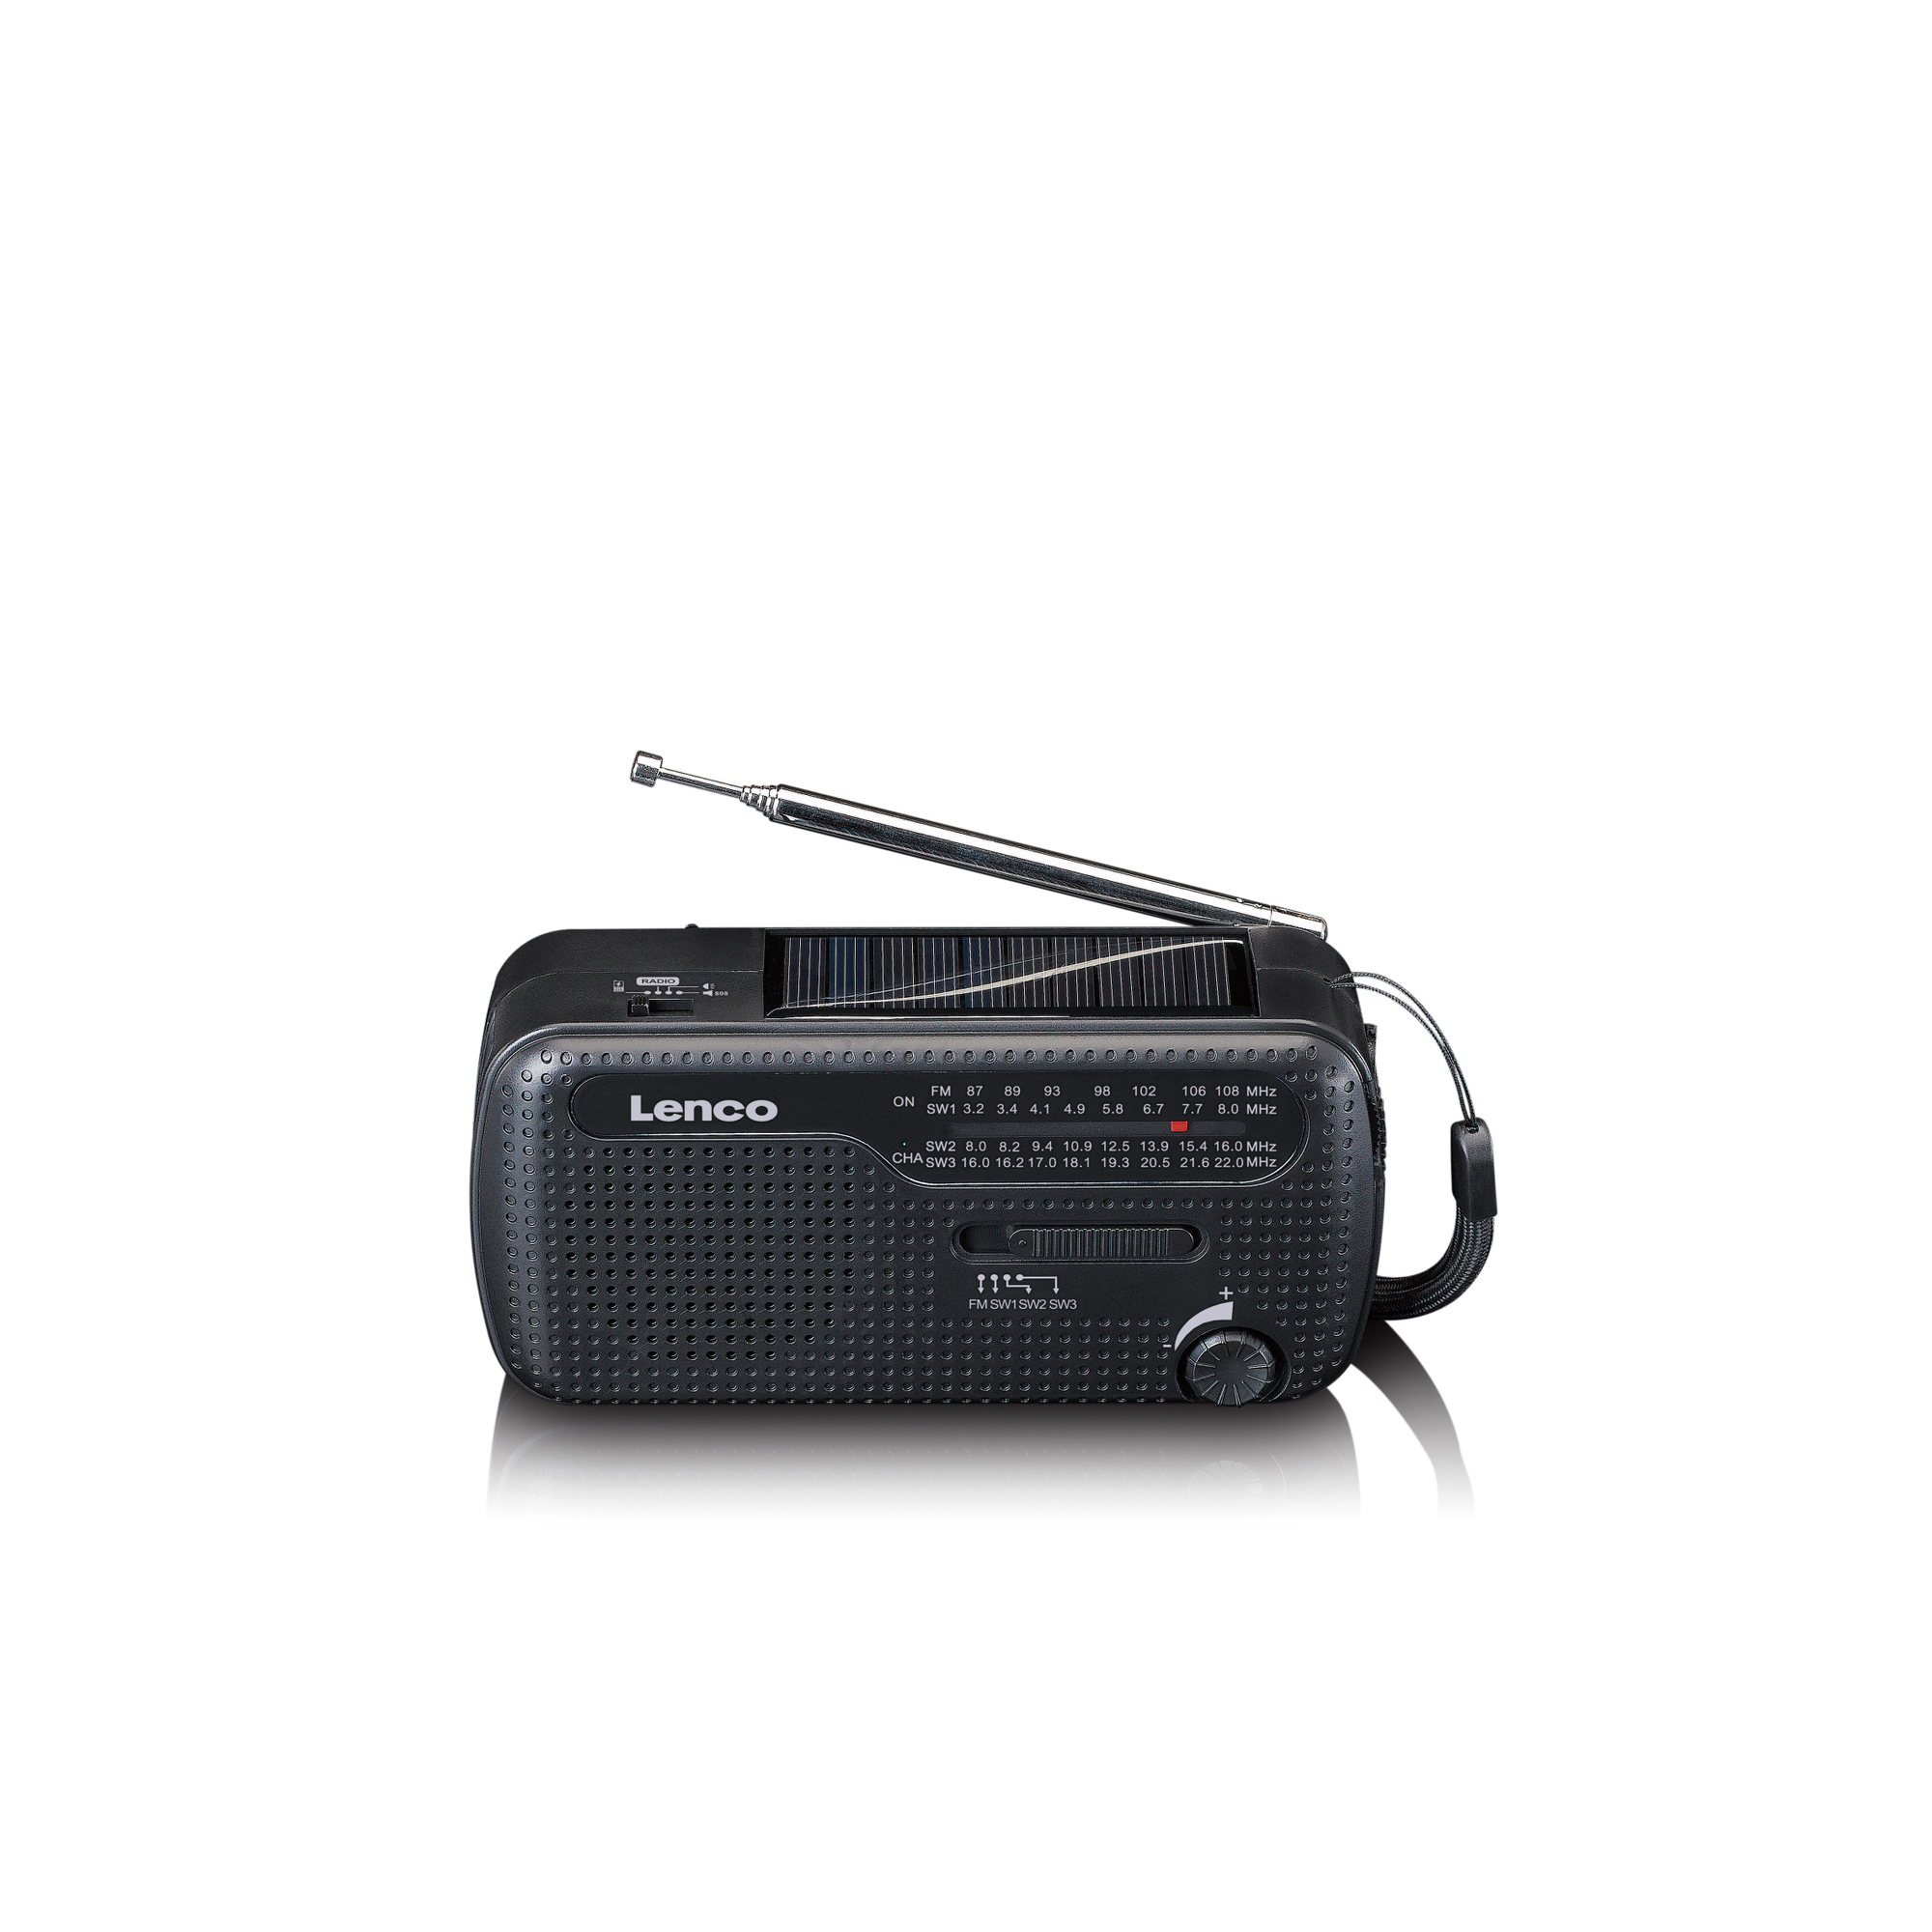 LENCO FM, und mit Tragbares Kurbelradio, Notfall MCR-112BK einem - Powerbank in Radio Aufziehfunktion,Taschenlampe Schwarz -